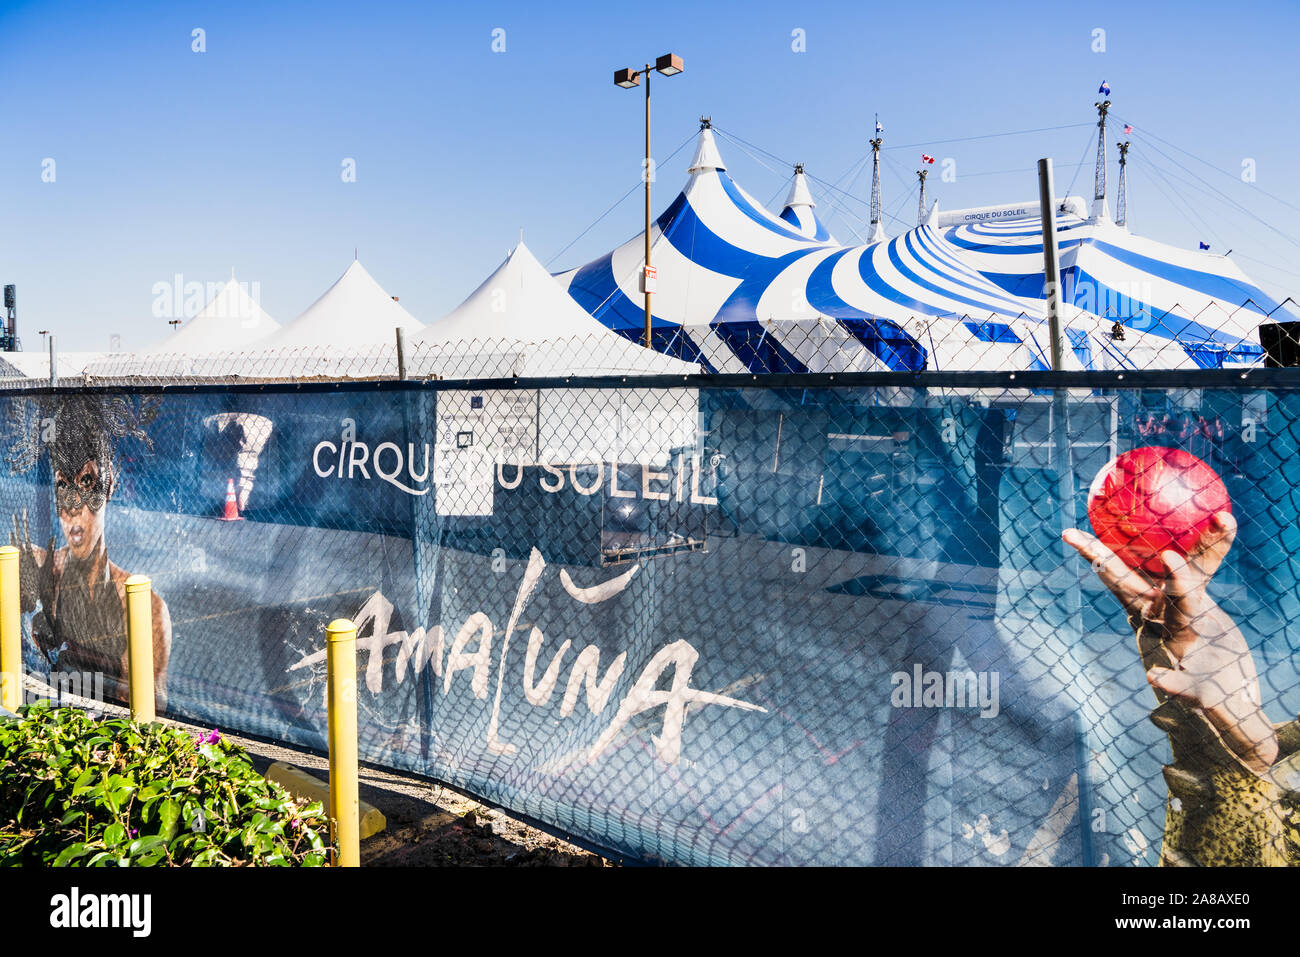 Nov 2, 2019 San Francisco/CA/USA - Zelt des Cirque du Soleil Show, Amaluna; Cirque du Soleil, einem kanadischen Unternehmen der Unterhaltungsbranche ist die größte Stockfoto